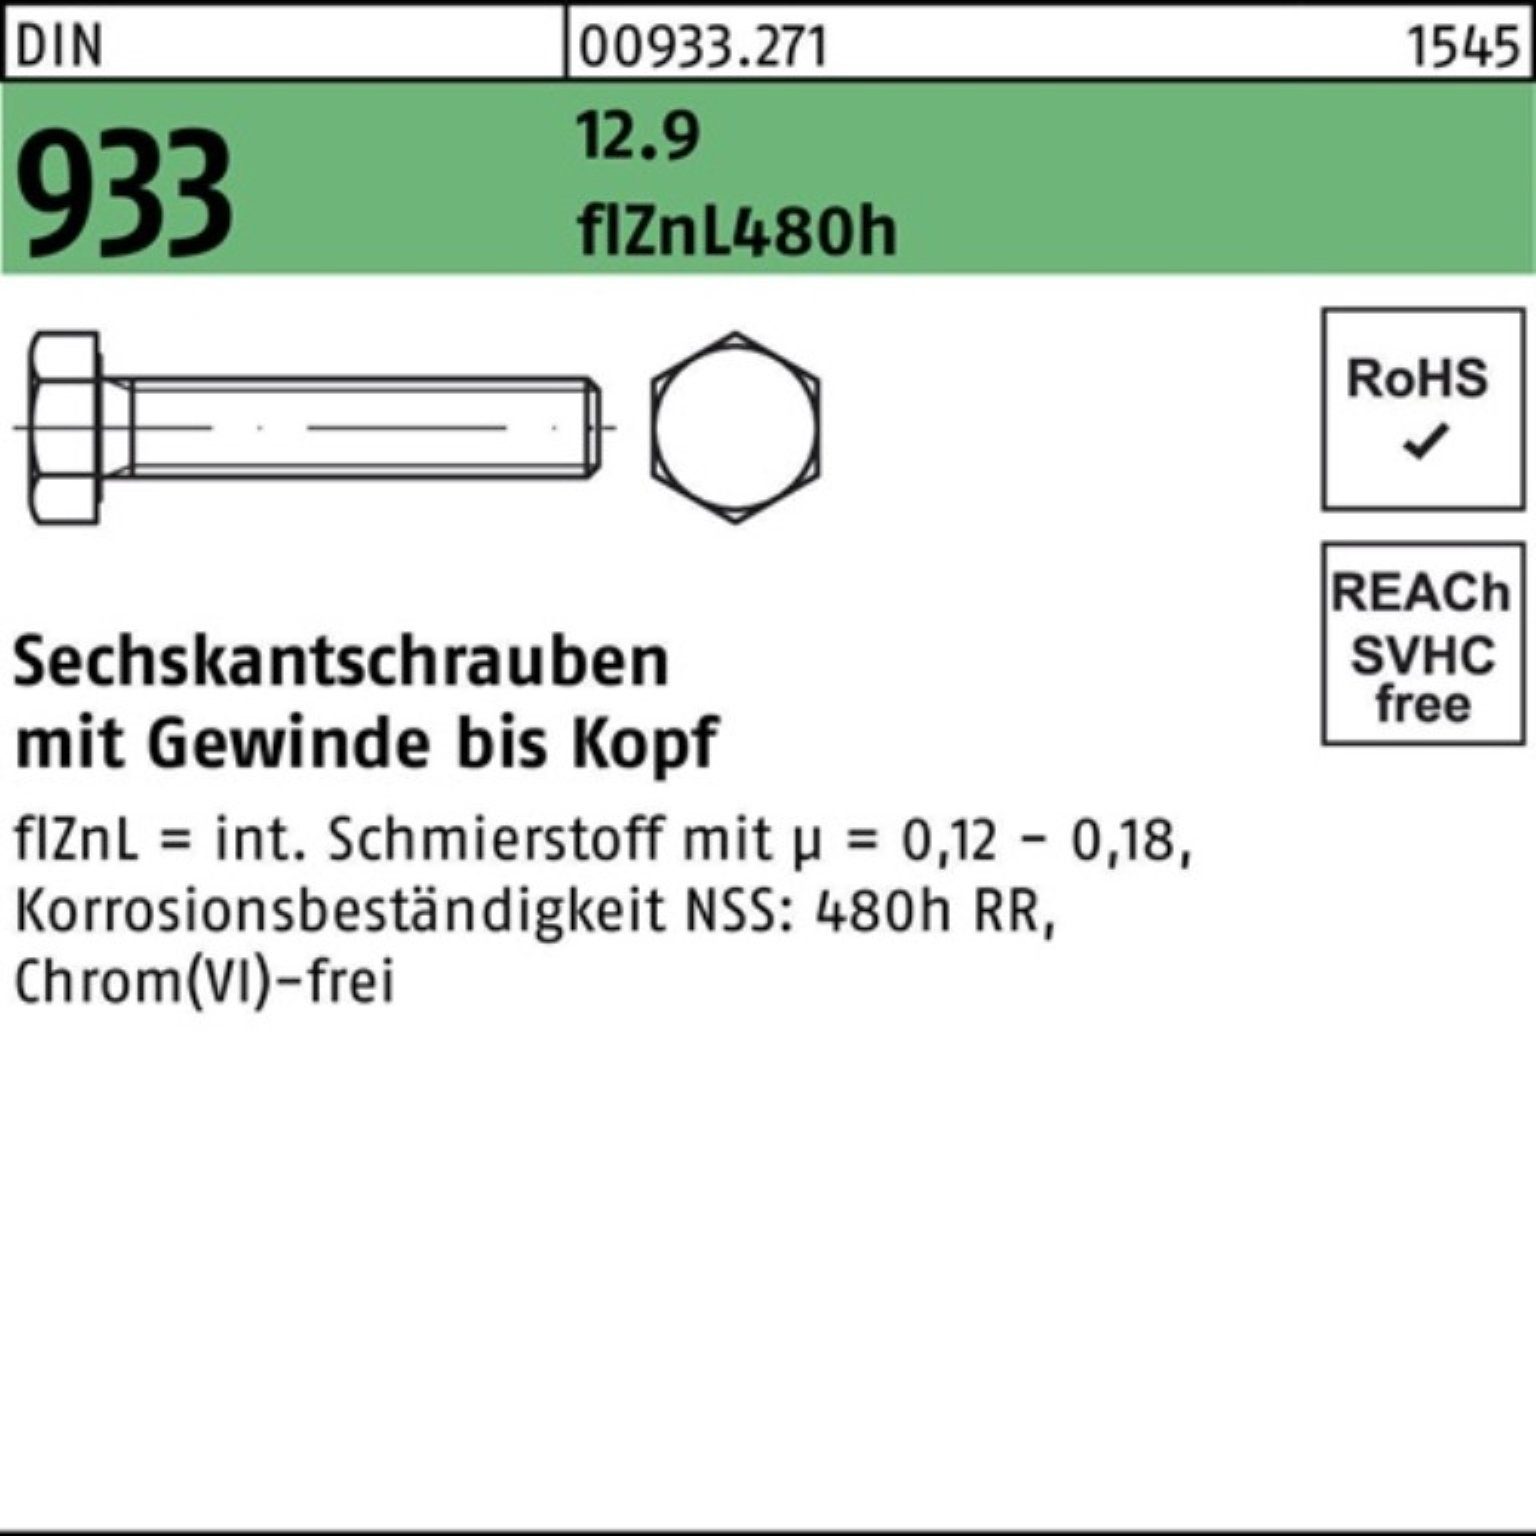 Reyher Sechskantschraube 500er Pack Sechskantschraube DIN 933 VG M6x 16 12.9 flZnL 480h zinklam